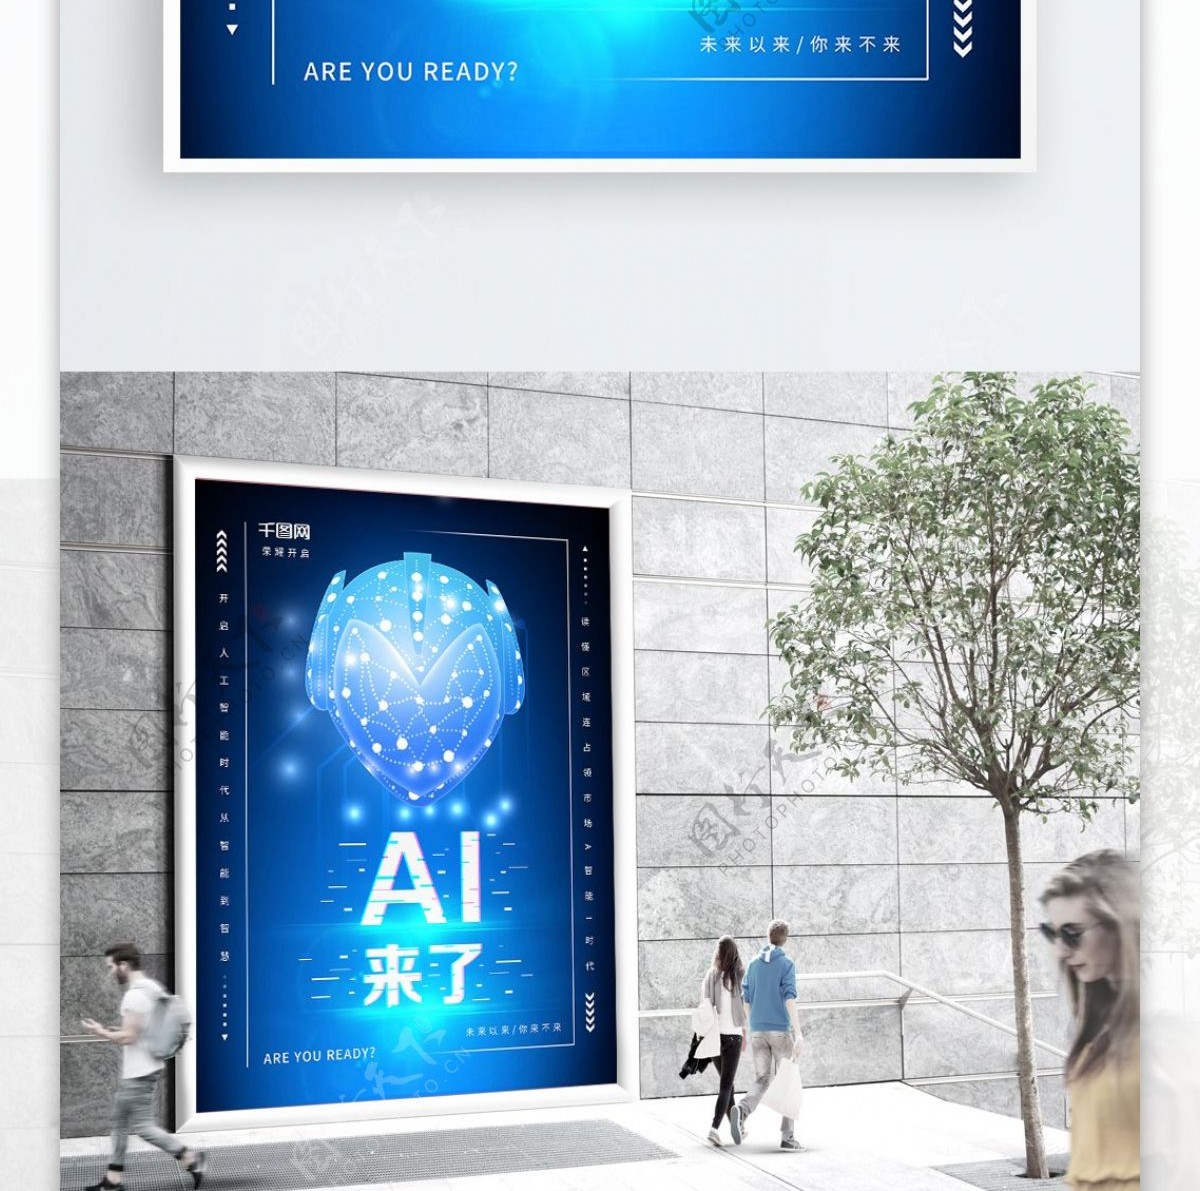 AI智能时代科技海报